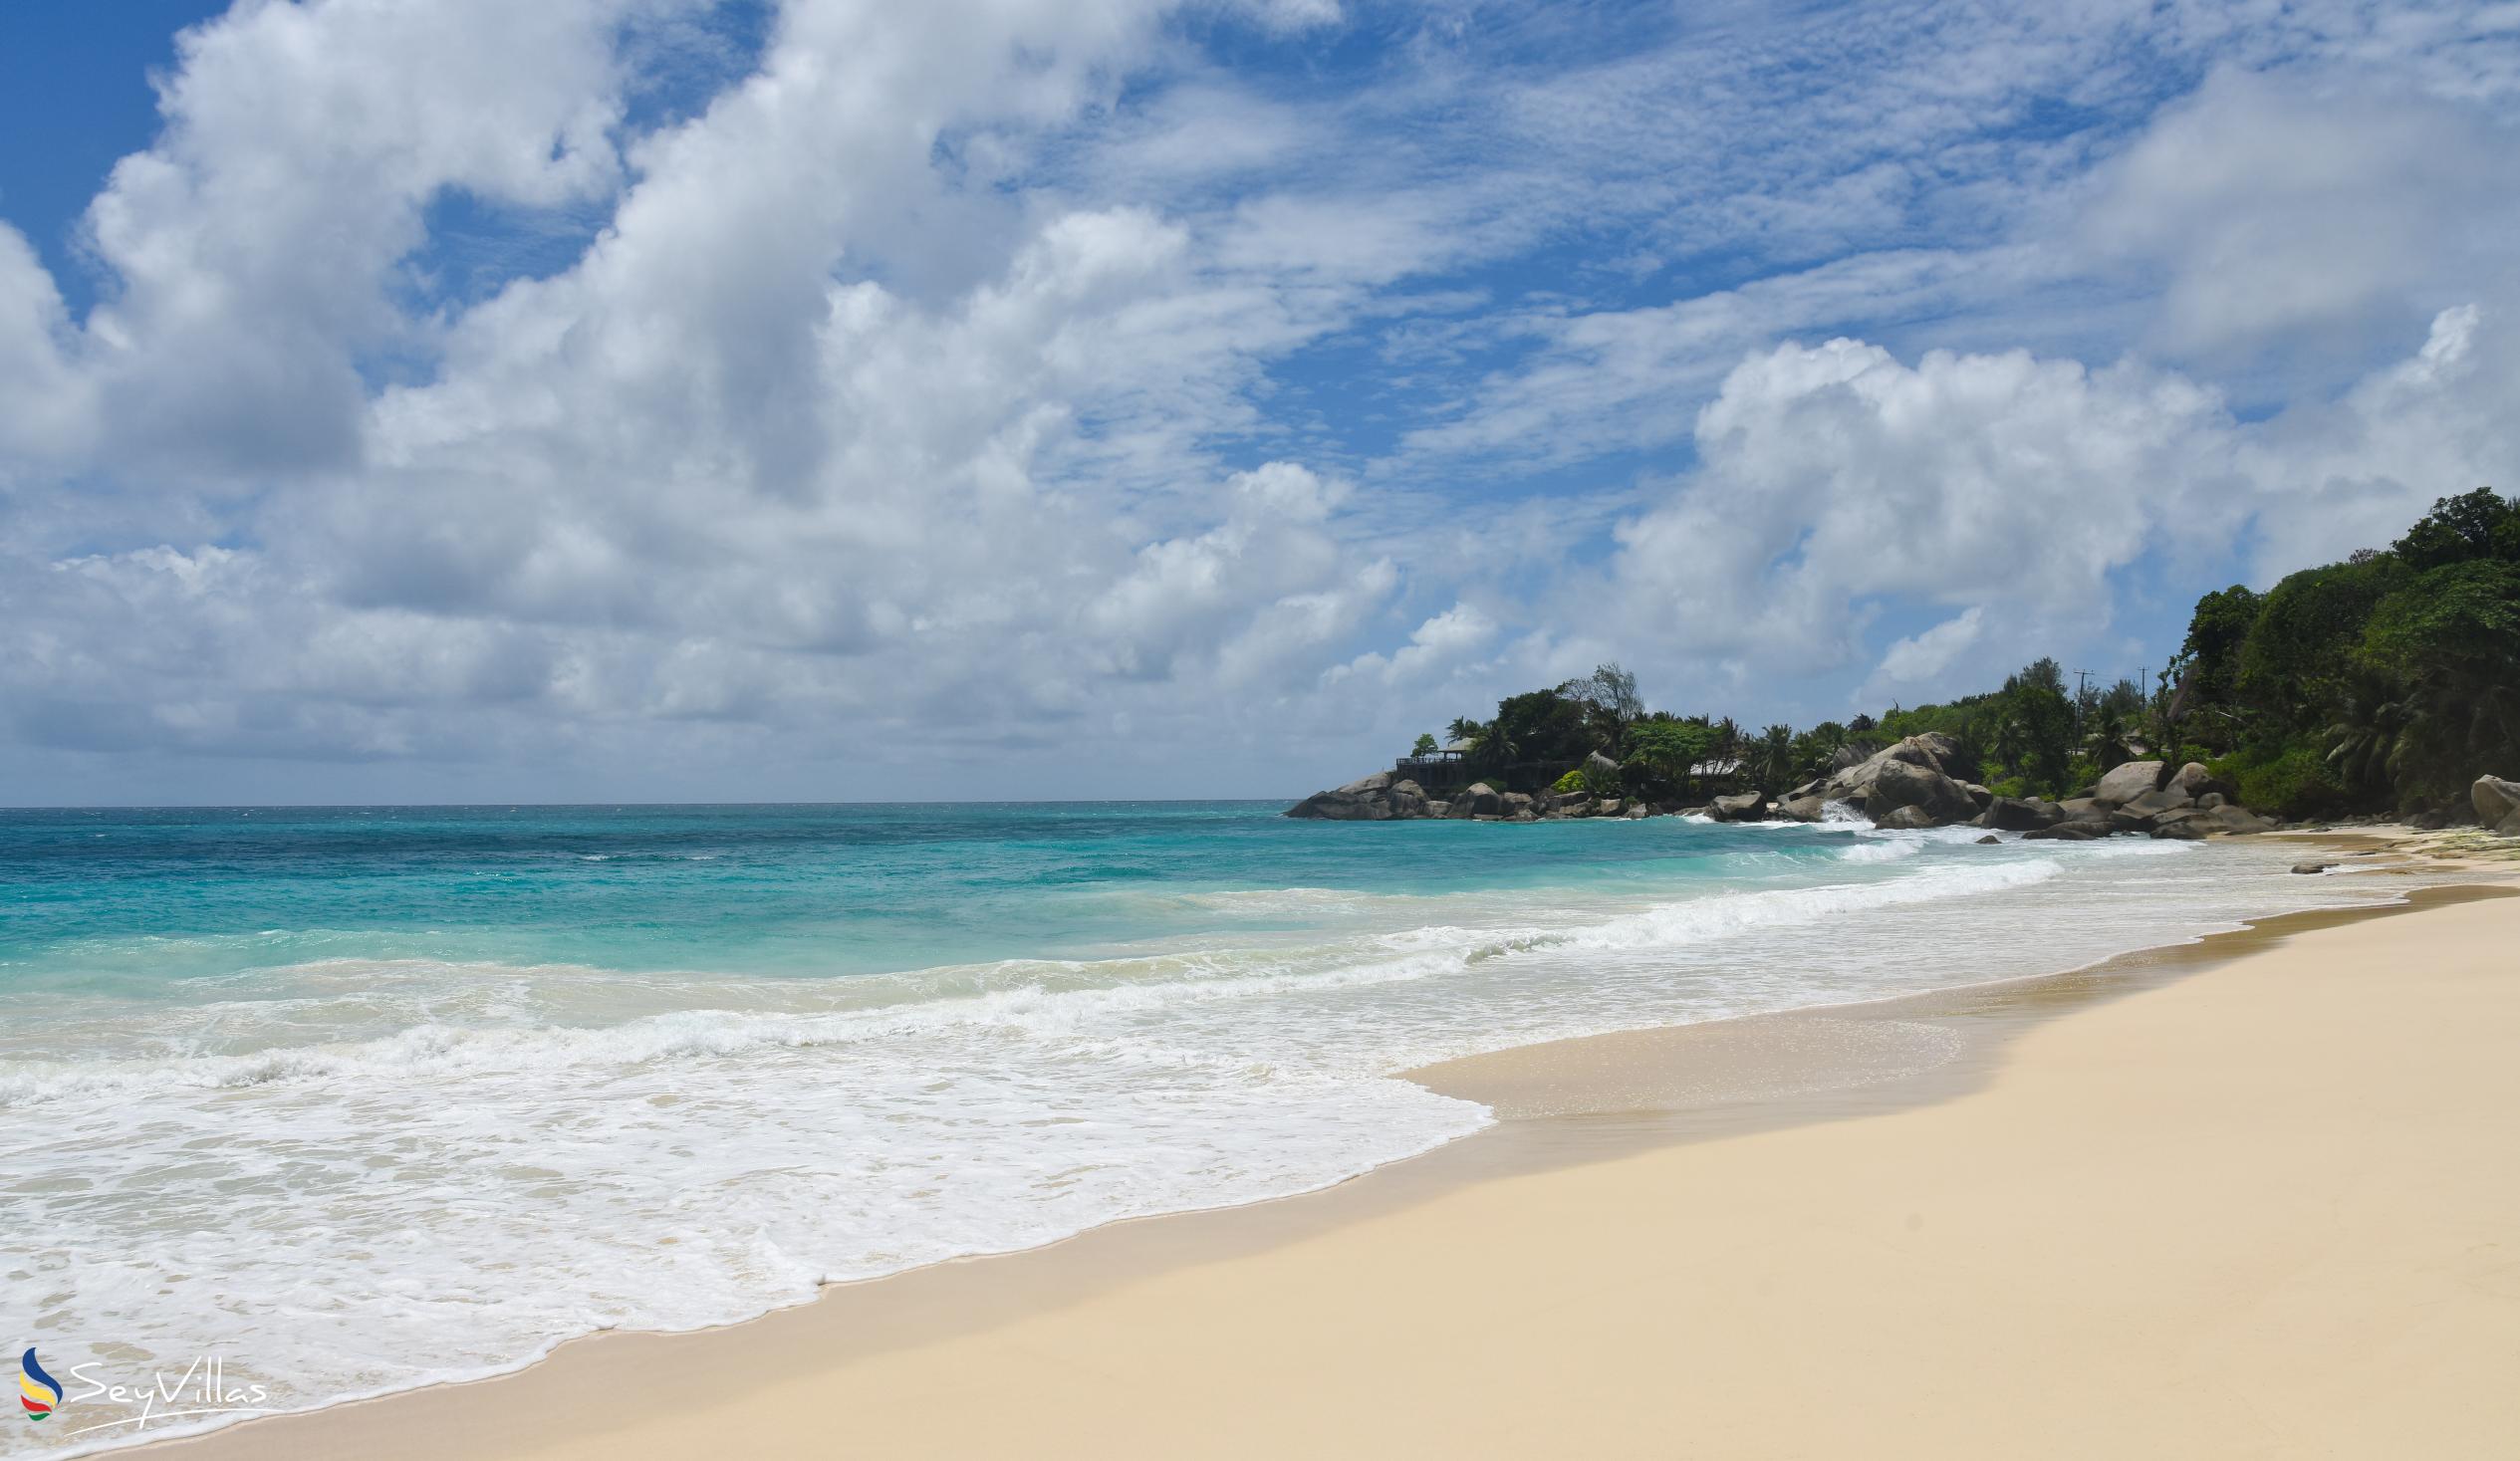 Foto 8: Carana Beach - Mahé (Seychelles)